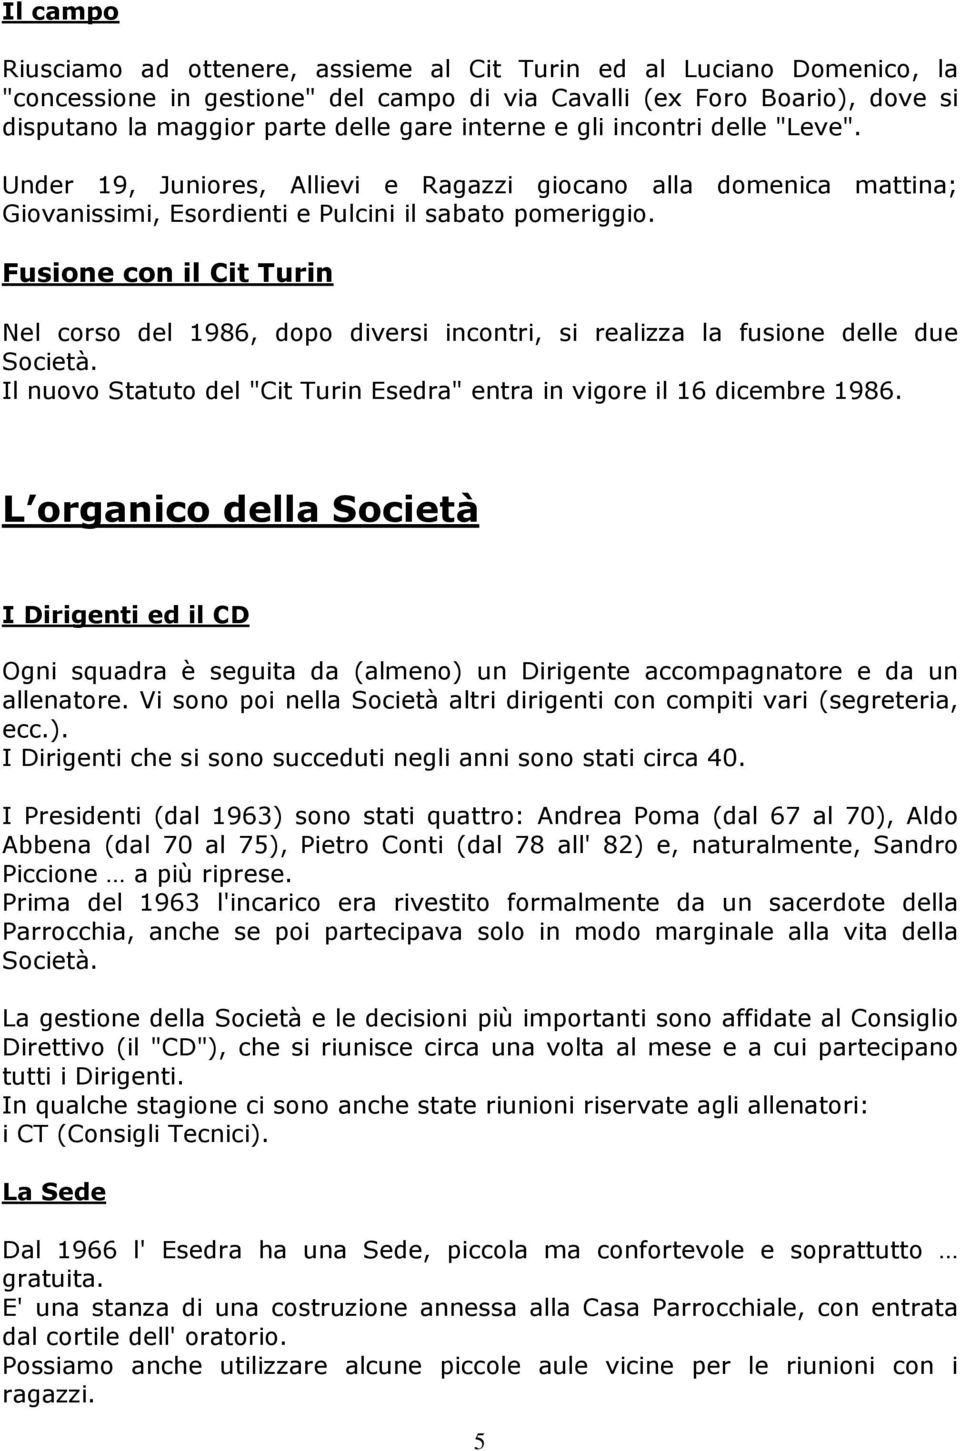 Fusione con il Cit Turin Nel corso del 1986, dopo diversi incontri, si realizza la fusione delle due Società. Il nuovo Statuto del "Cit Turin Esedra" entra in vigore il 16 dicembre 1986.